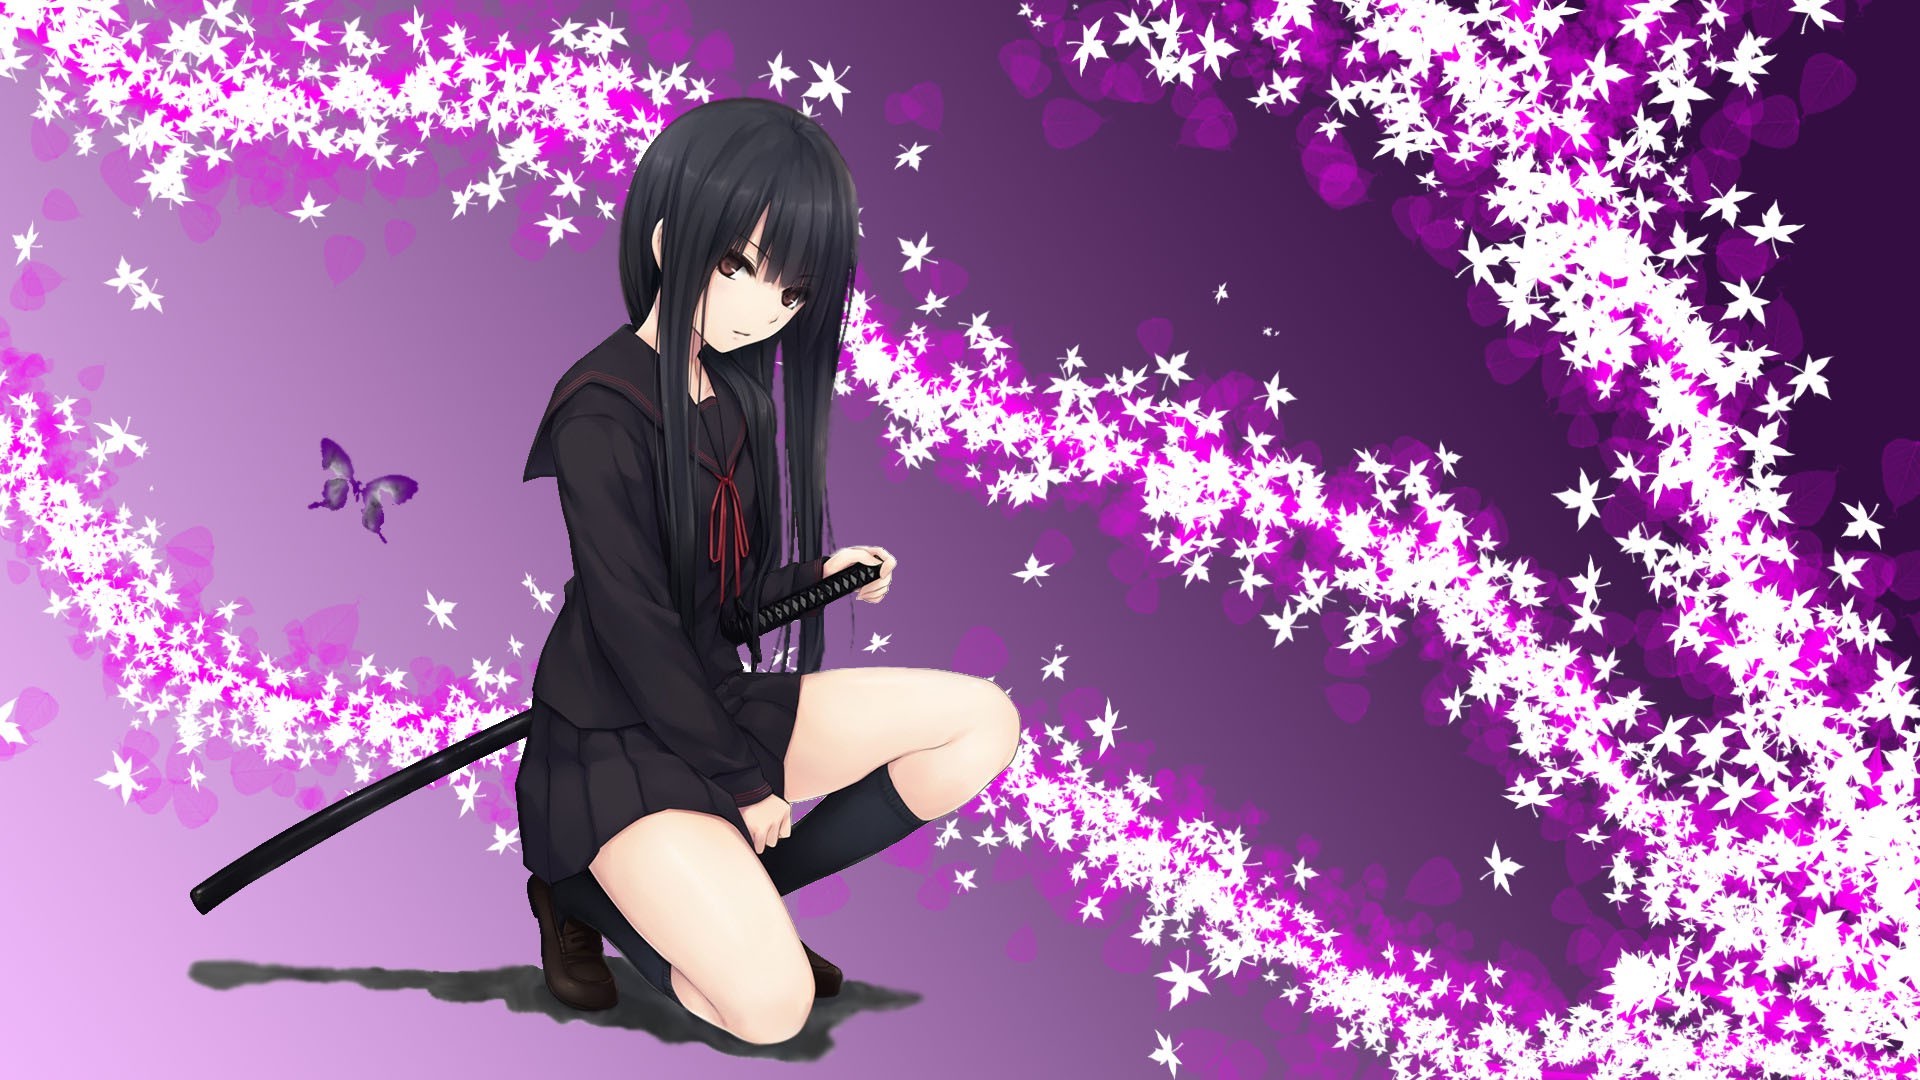 anime girl wallpaper,anime,purple,cg artwork,black hair,illustration